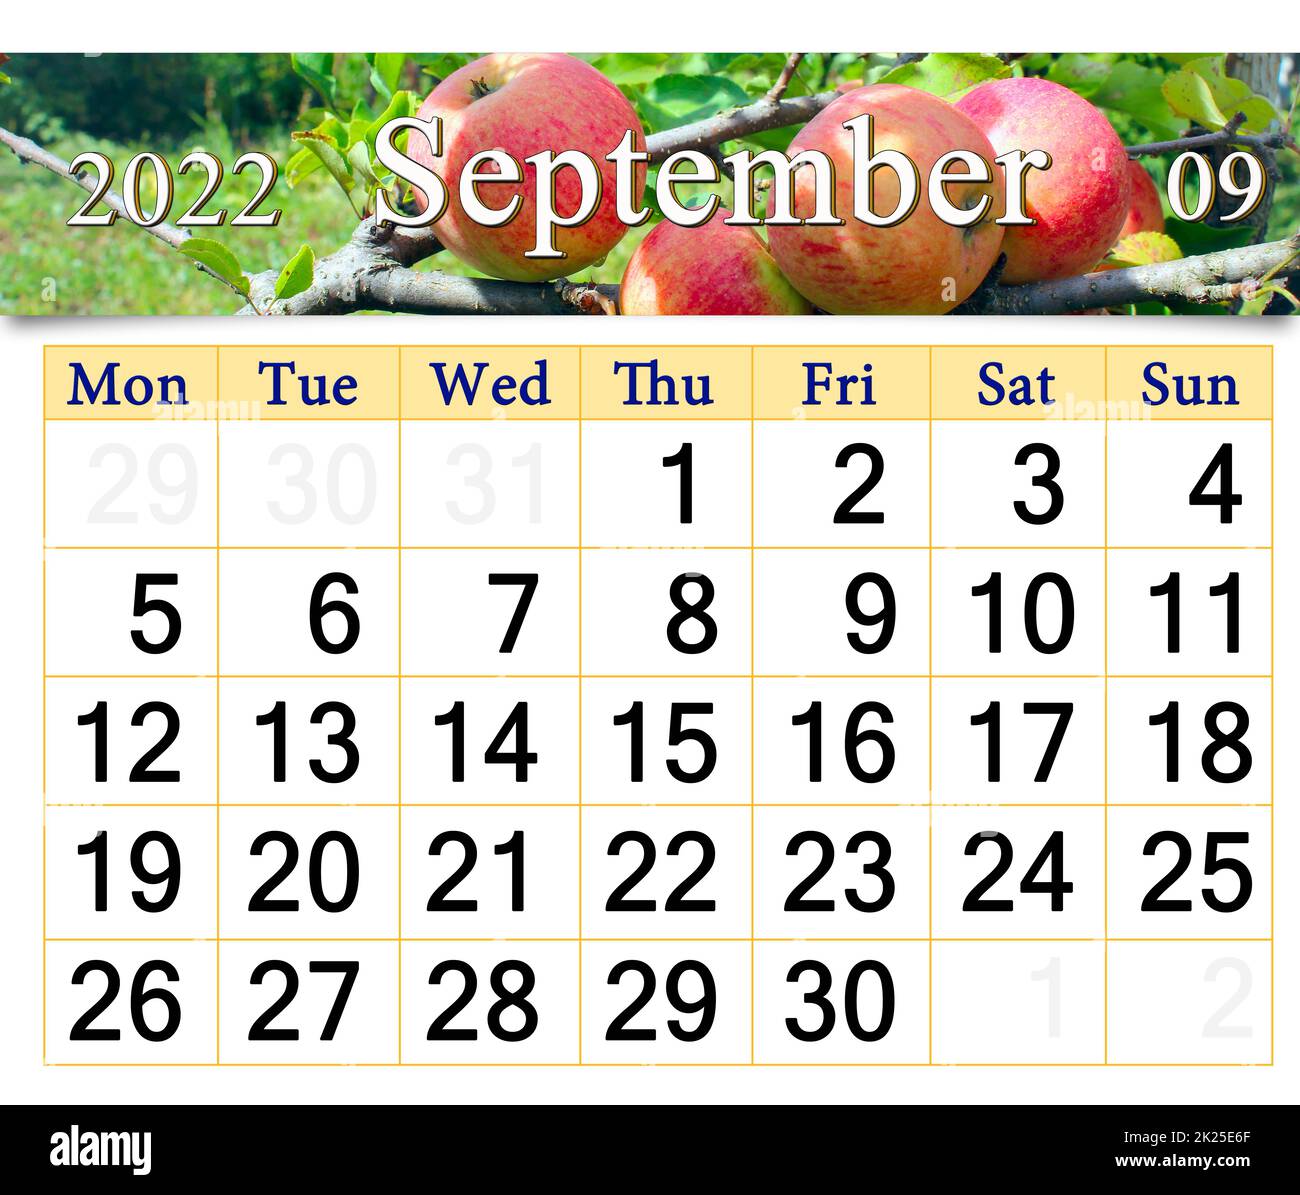 Kalender für september 2022 mit Bild von reifen roten Äpfeln auf einem Baumzweig Stockfoto